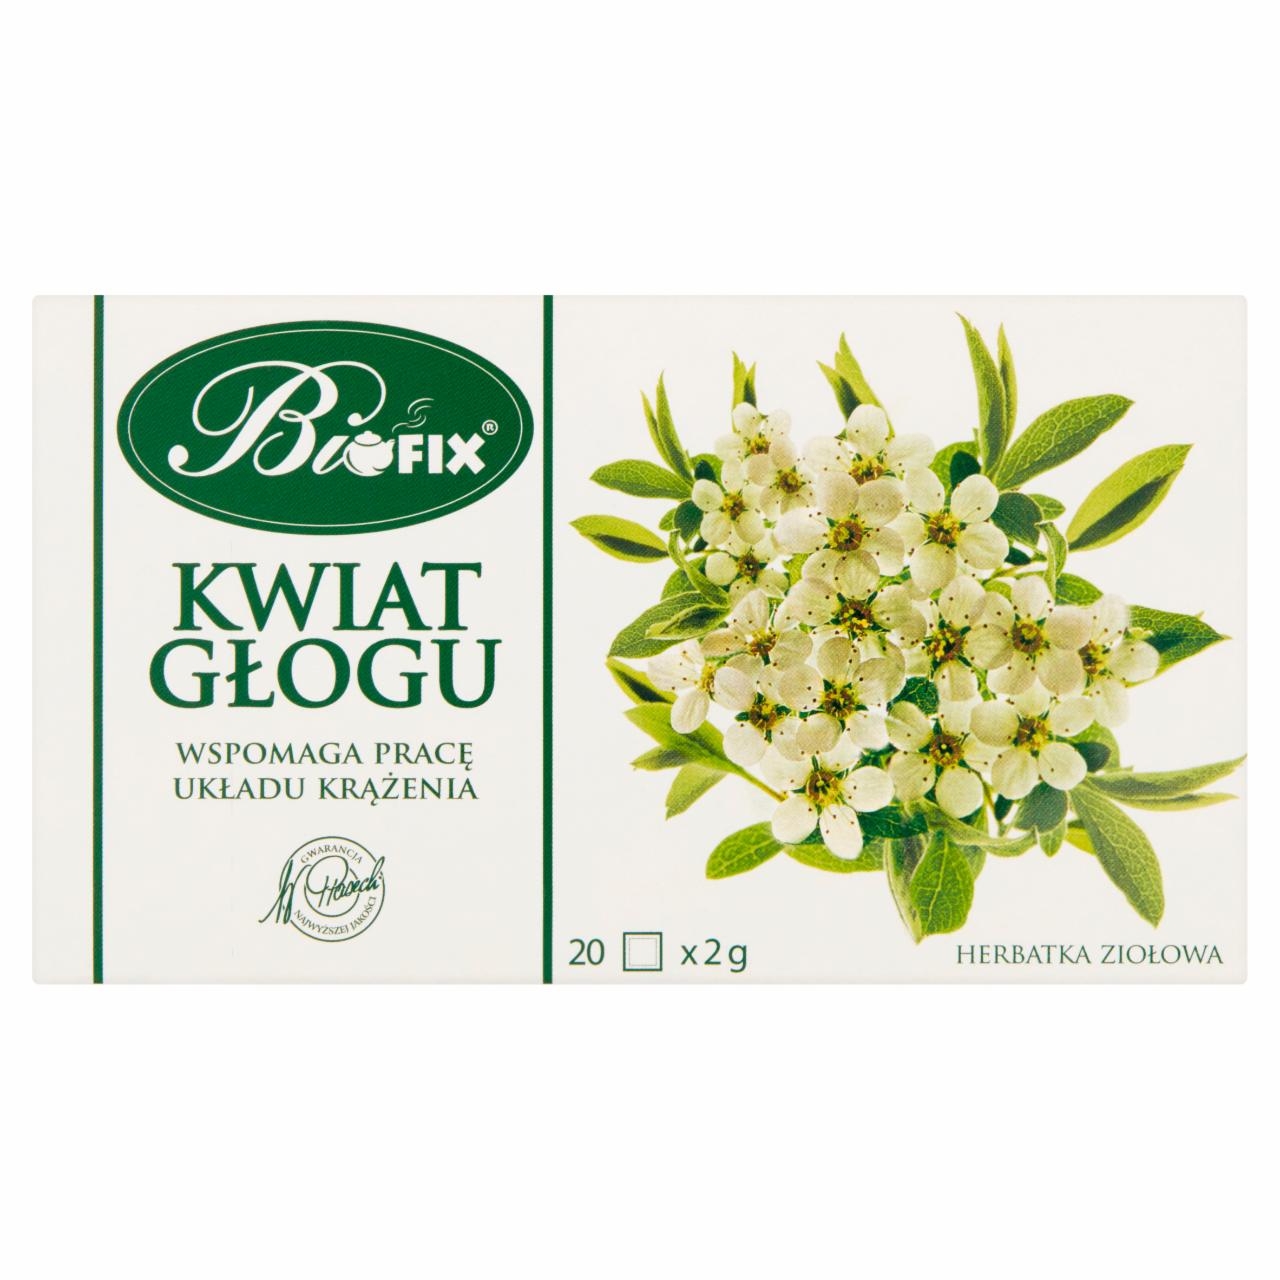 Zdjęcia - Bifix Herbatka ziołowa kwiat głogu 40 g (20 x 2 g)